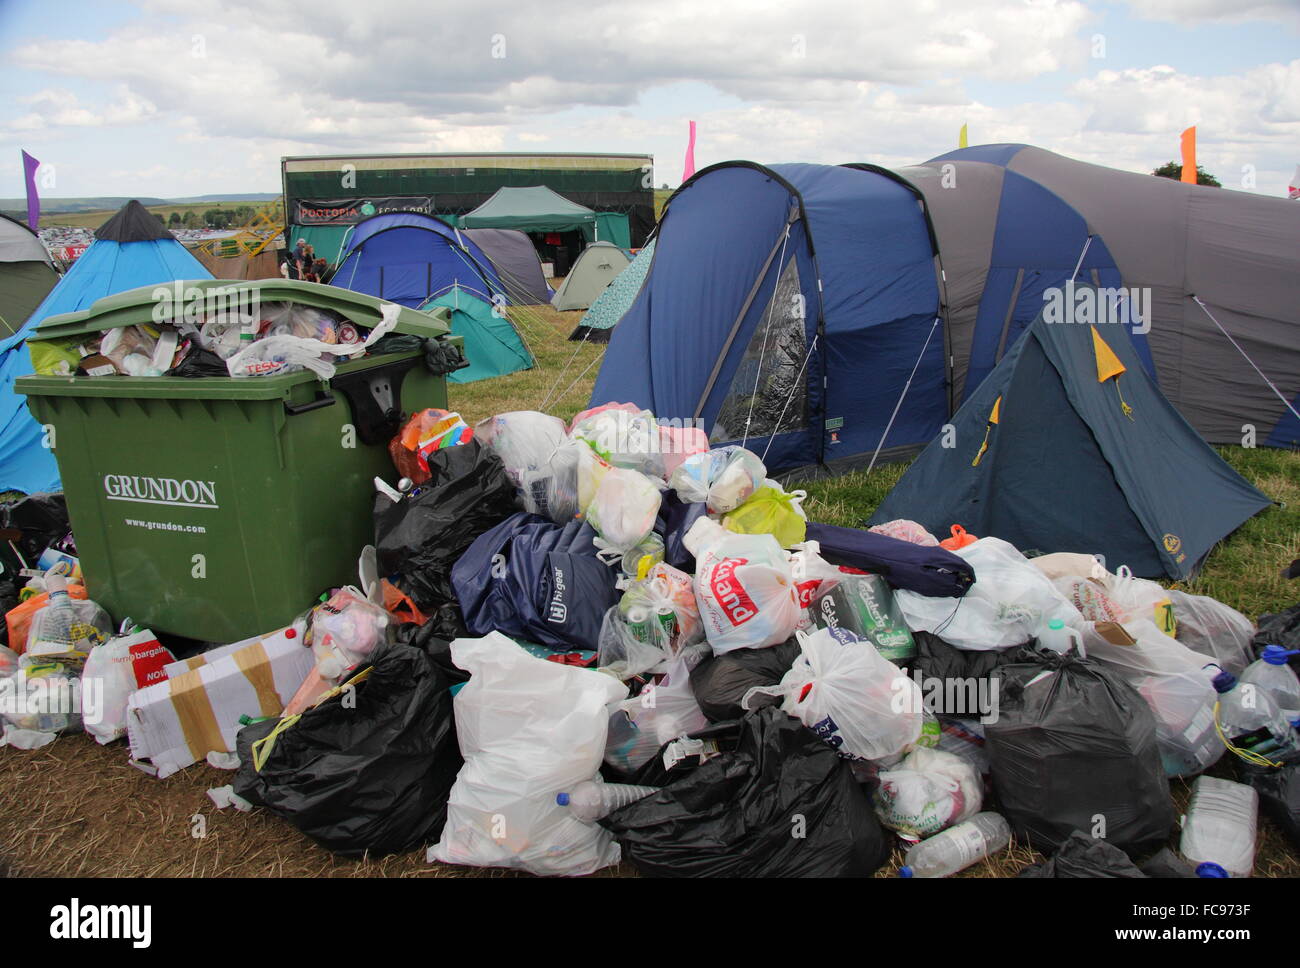 La basura rodea un bin por los asistentes al festival' tiendas de campaña en un camping en el campo y no festival de música en el Peak District, REINO UNIDO Foto de stock